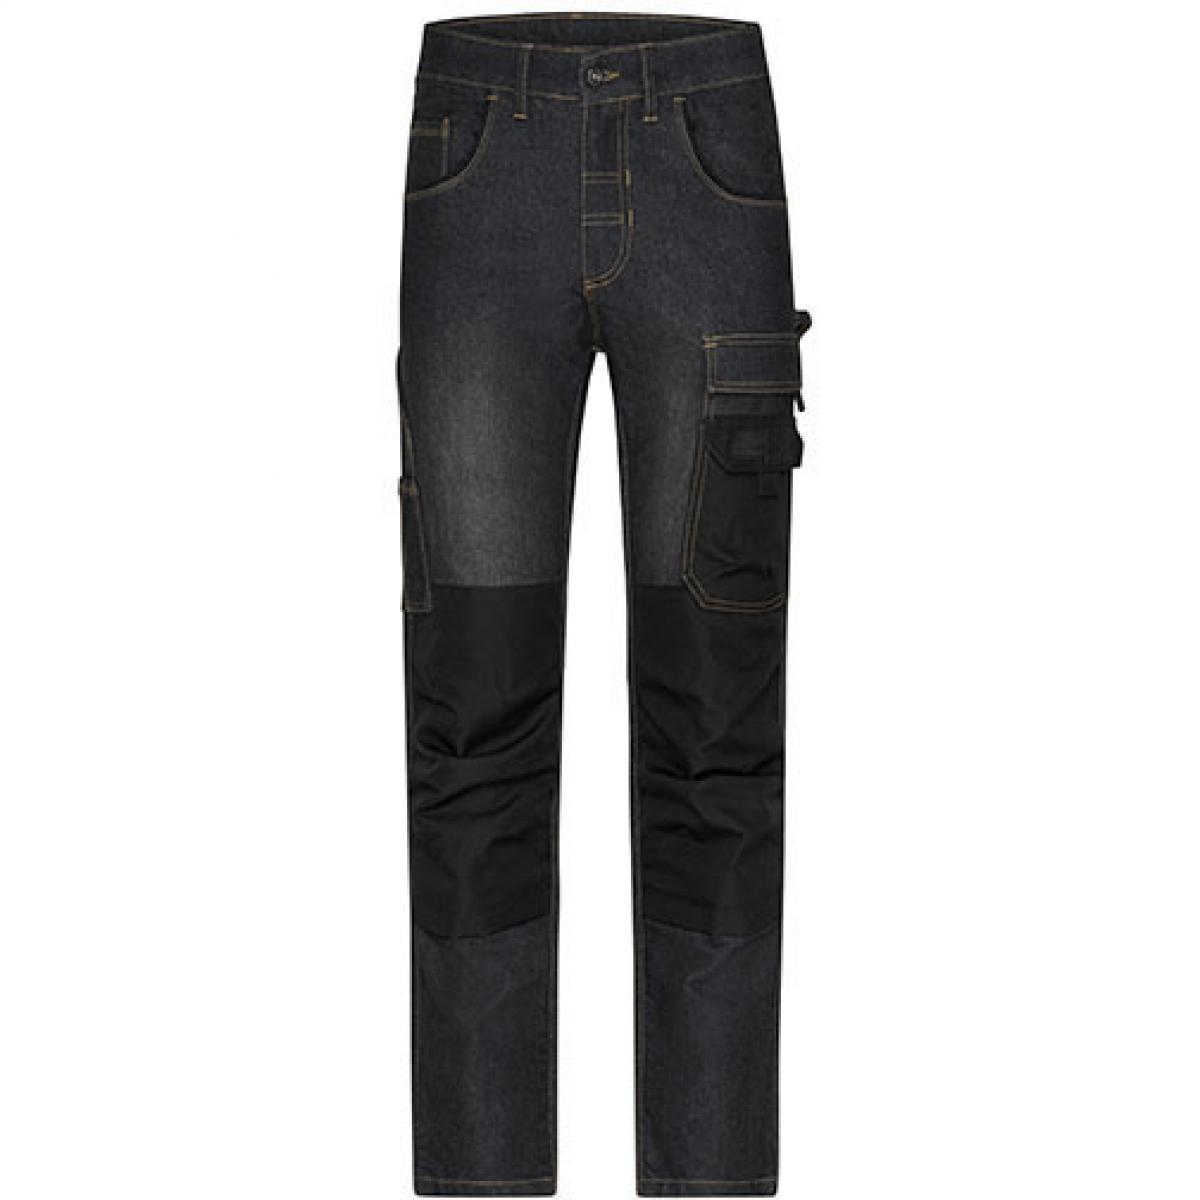 Hersteller: James+Nicholson Herstellernummer: JN875 Artikelbezeichnung: Herren Hose, Workwear Stretch-Jeans Farbe: Black Denim